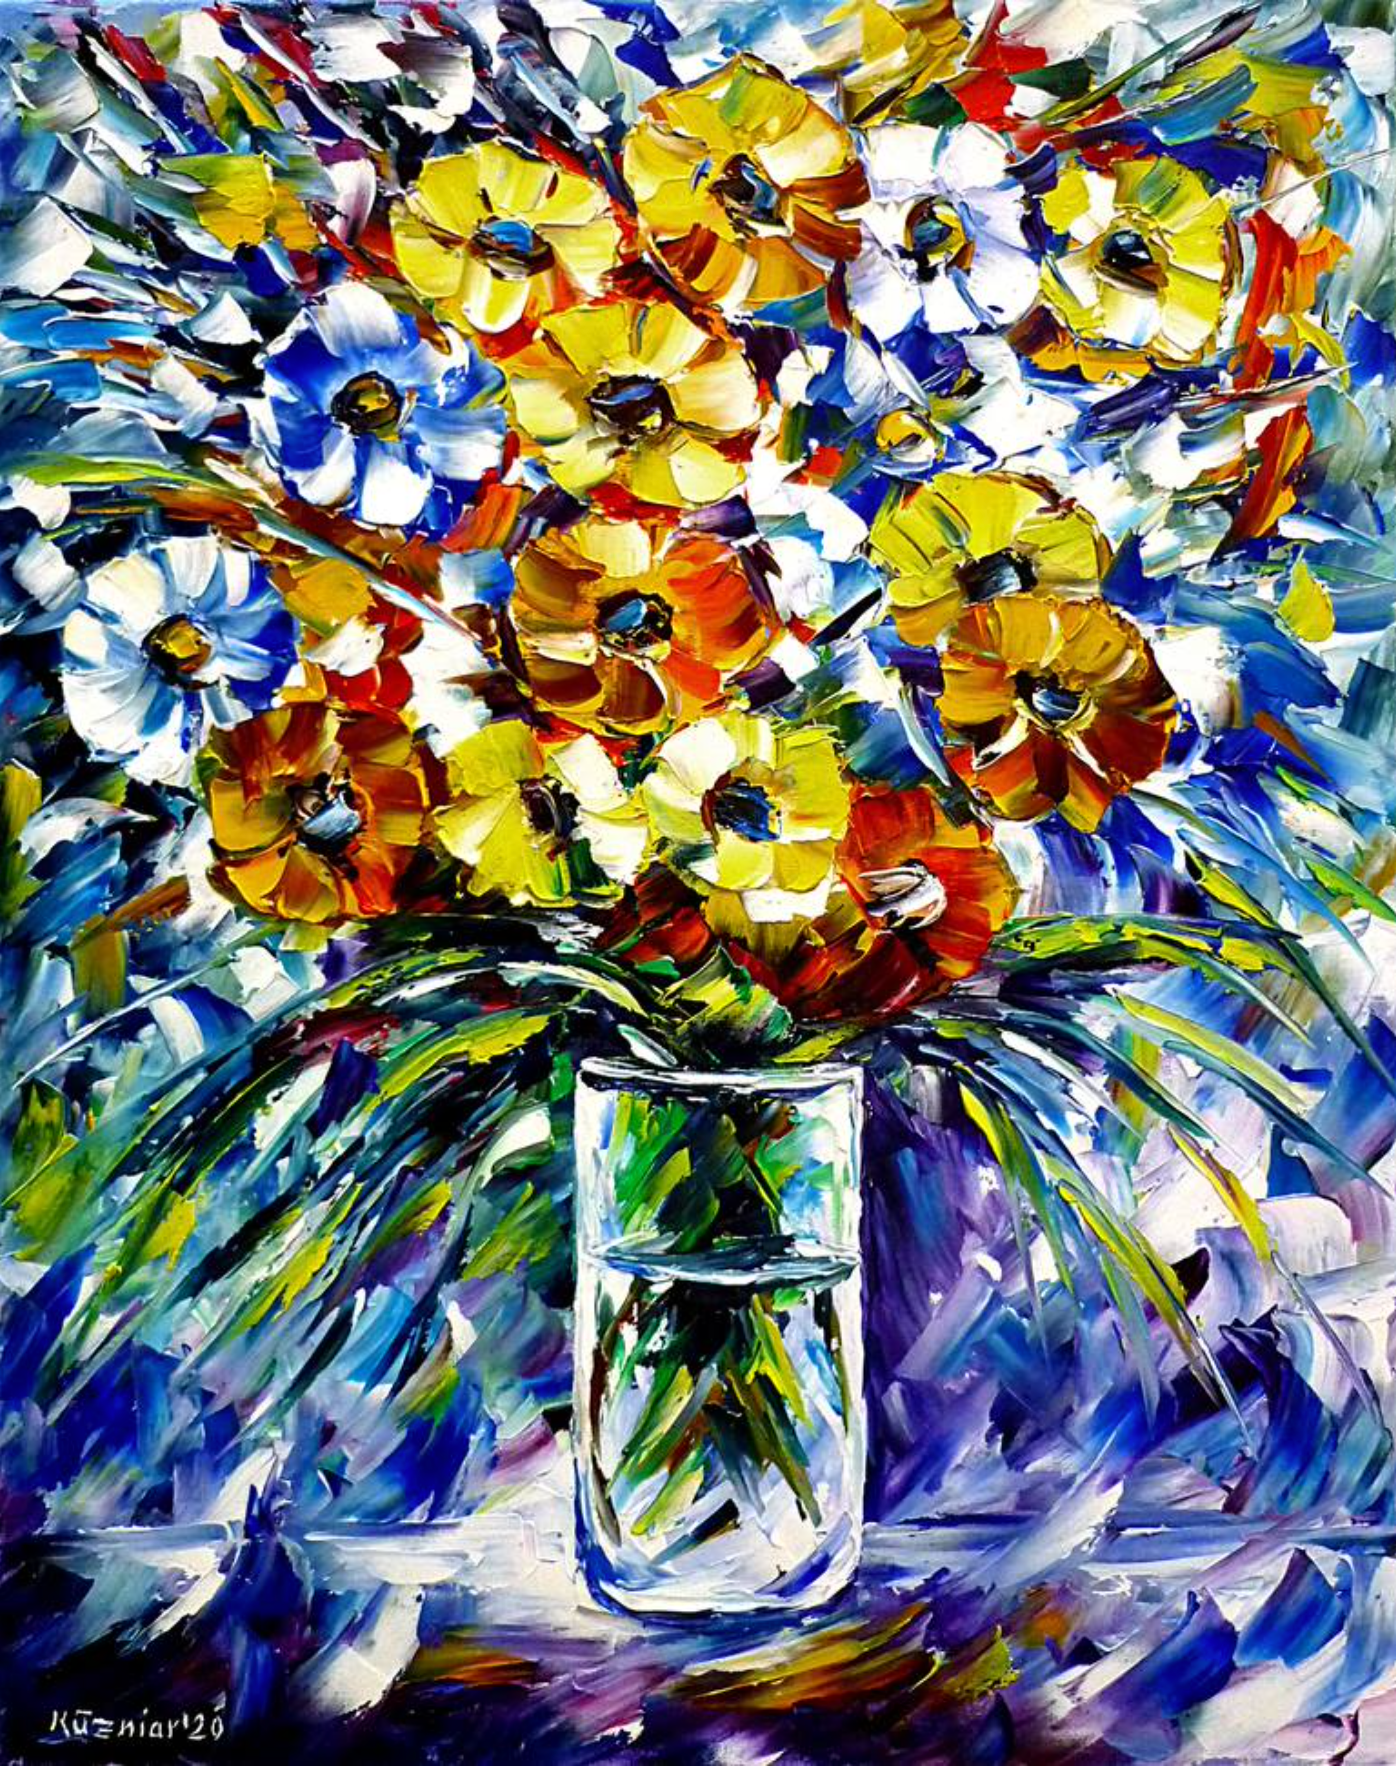 Mirek Kuzinar expressionistische Malerei  bunte Blumen in glas Vase auf Tisch